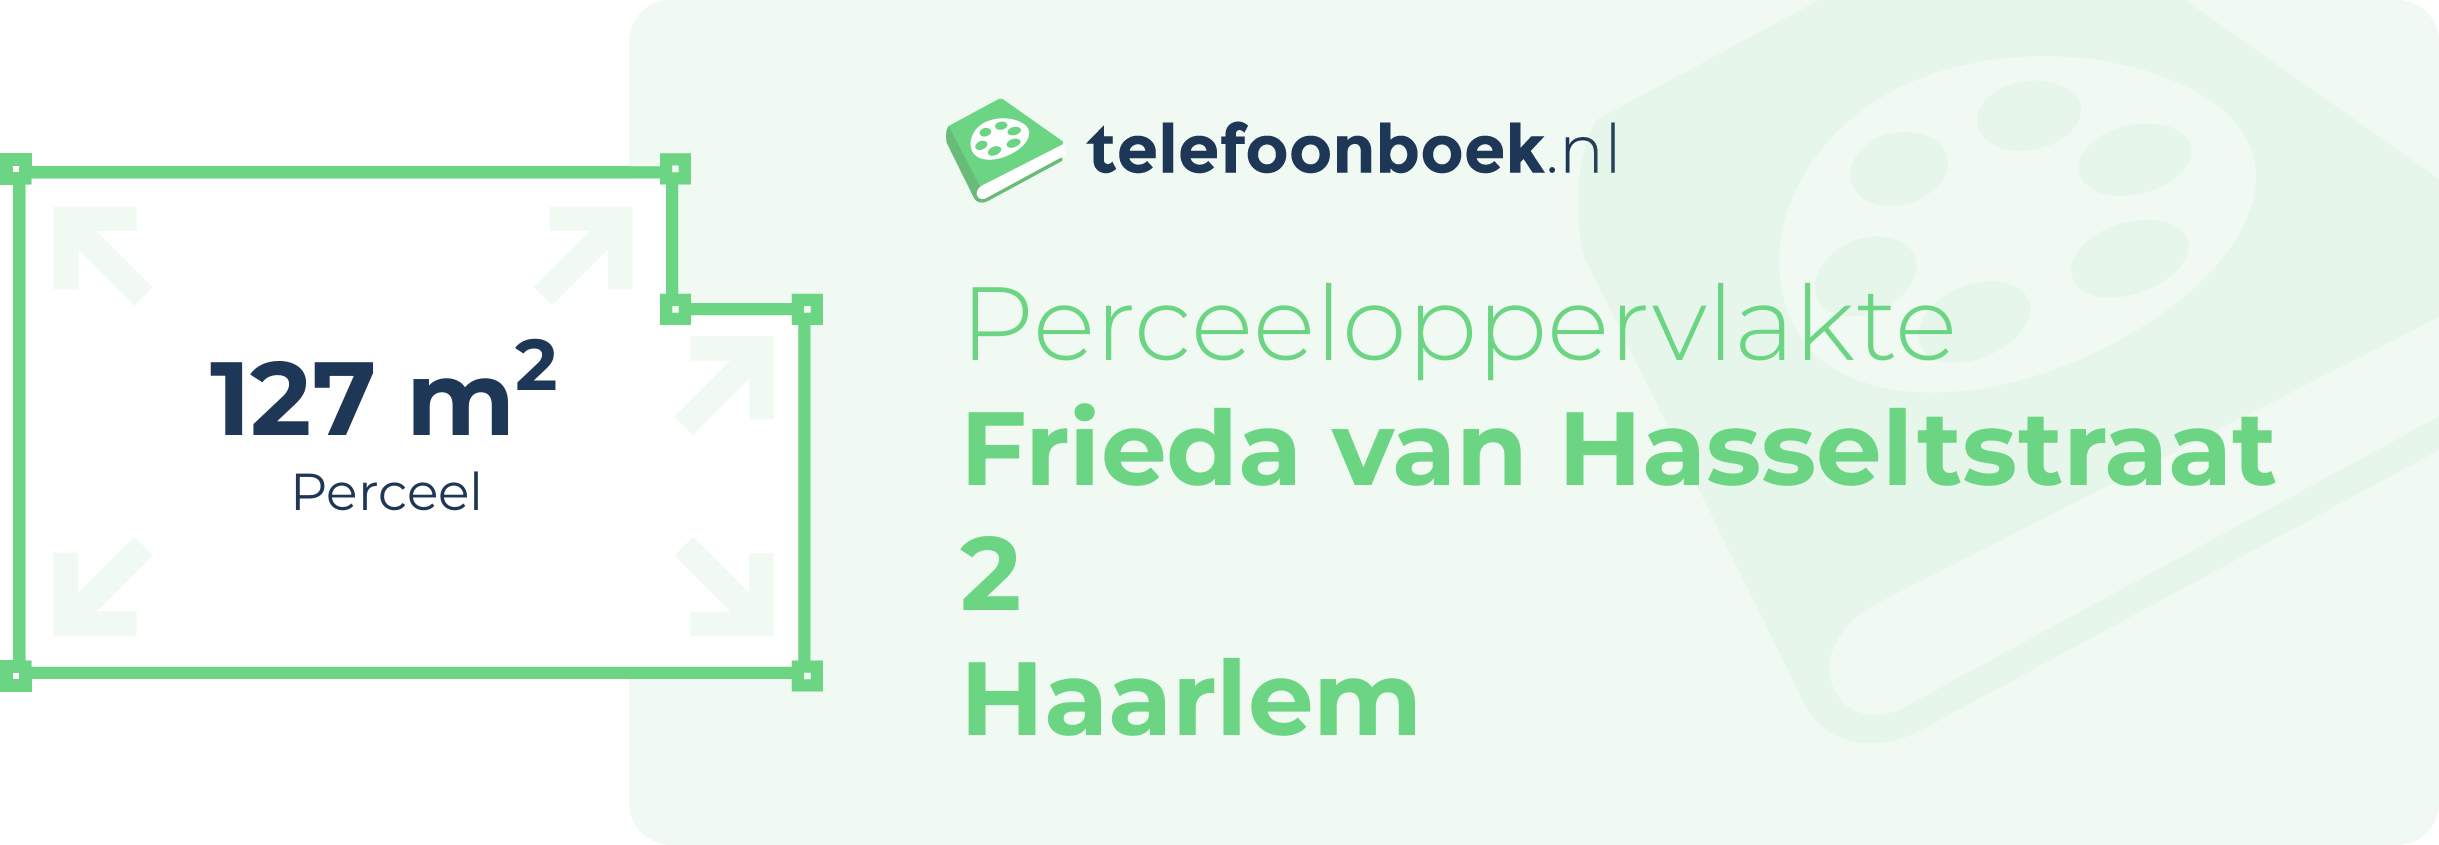 Perceeloppervlakte Frieda Van Hasseltstraat 2 Haarlem